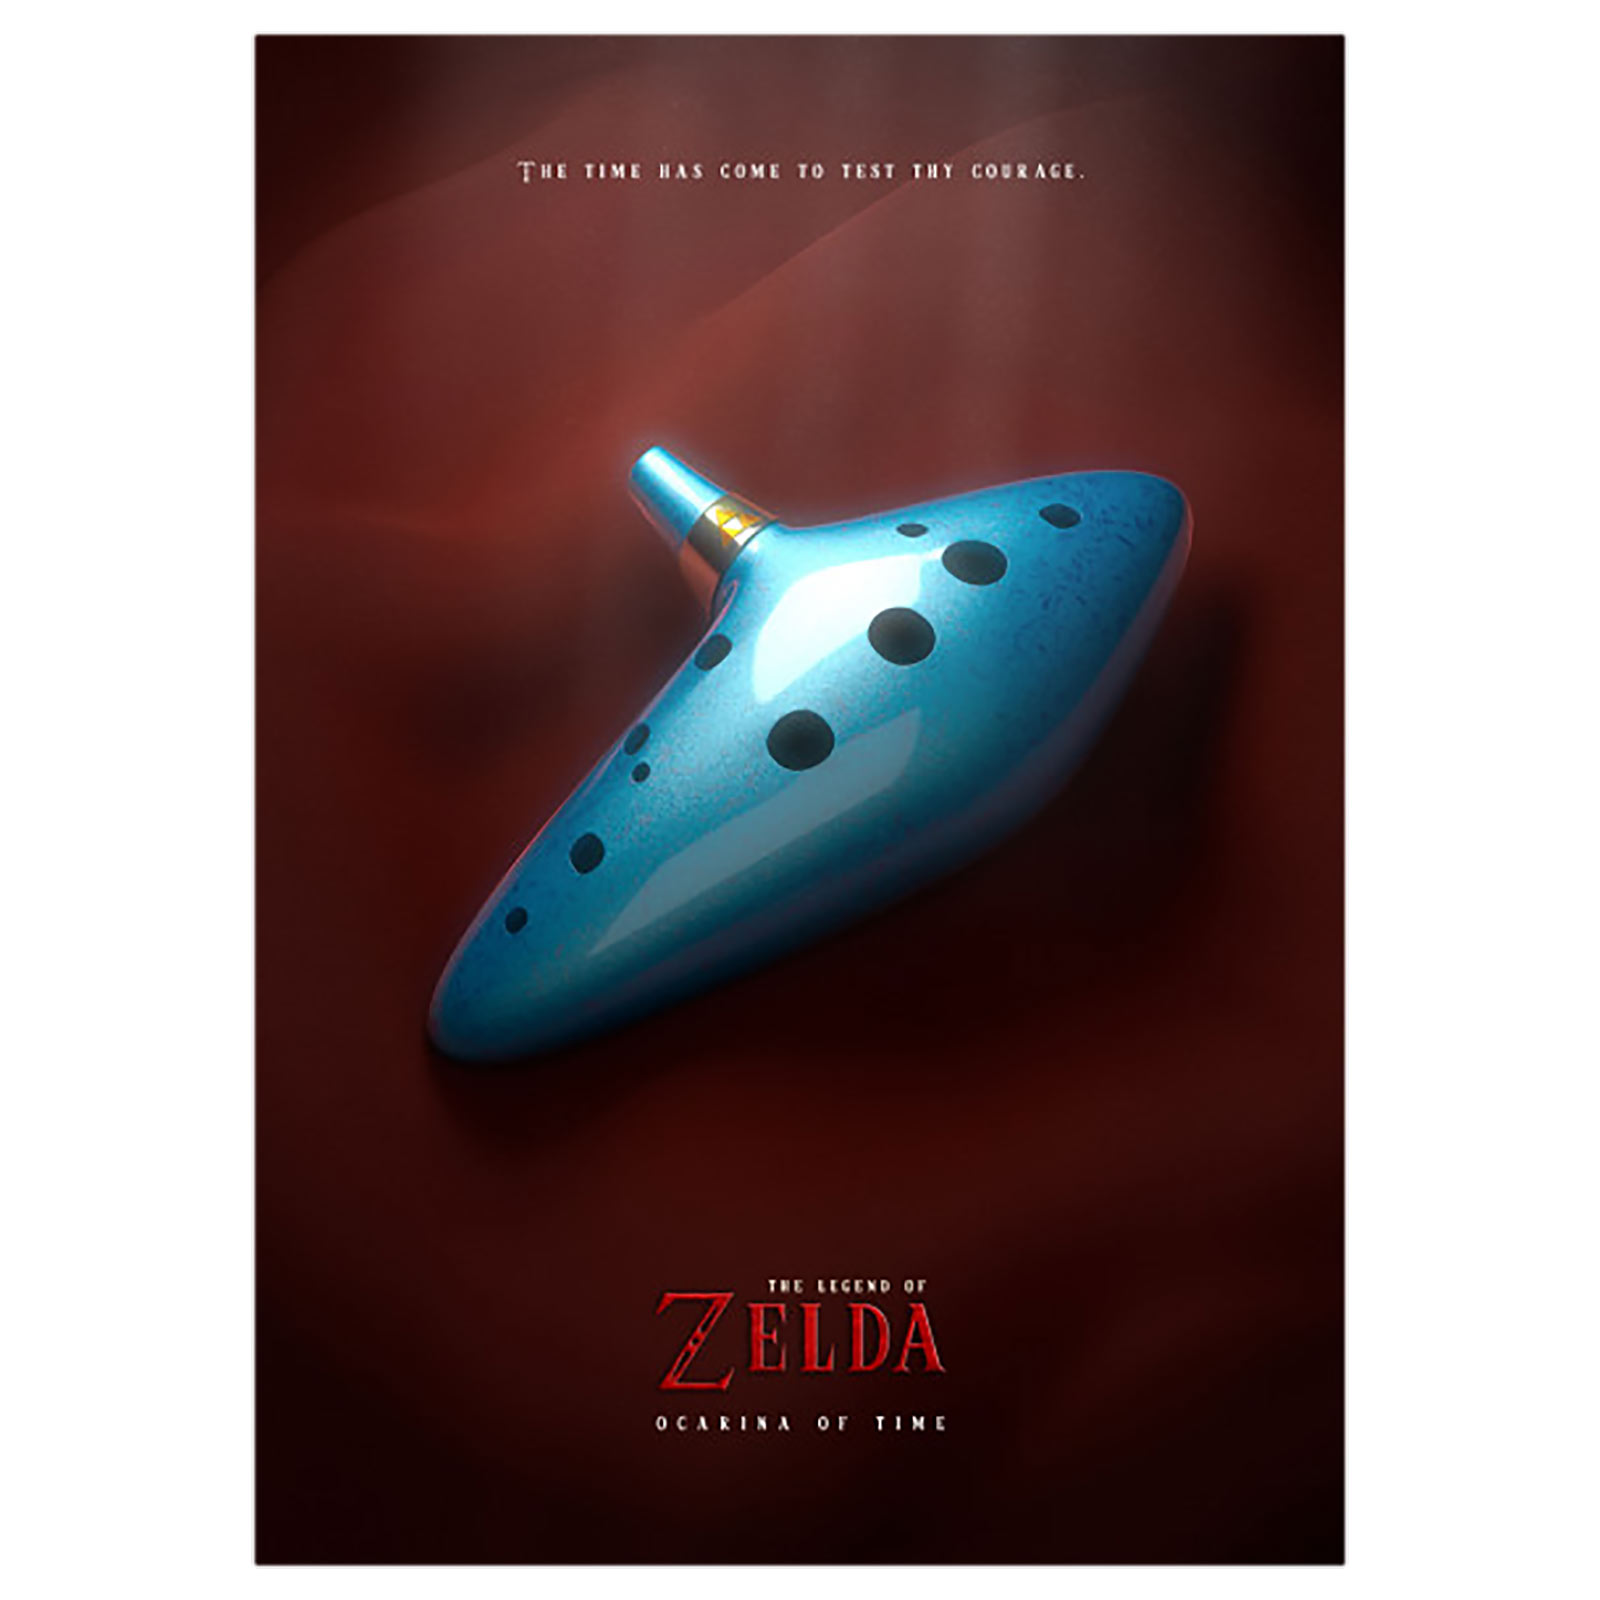 Okarina der Zeit Metall Poster für Zelda Fans